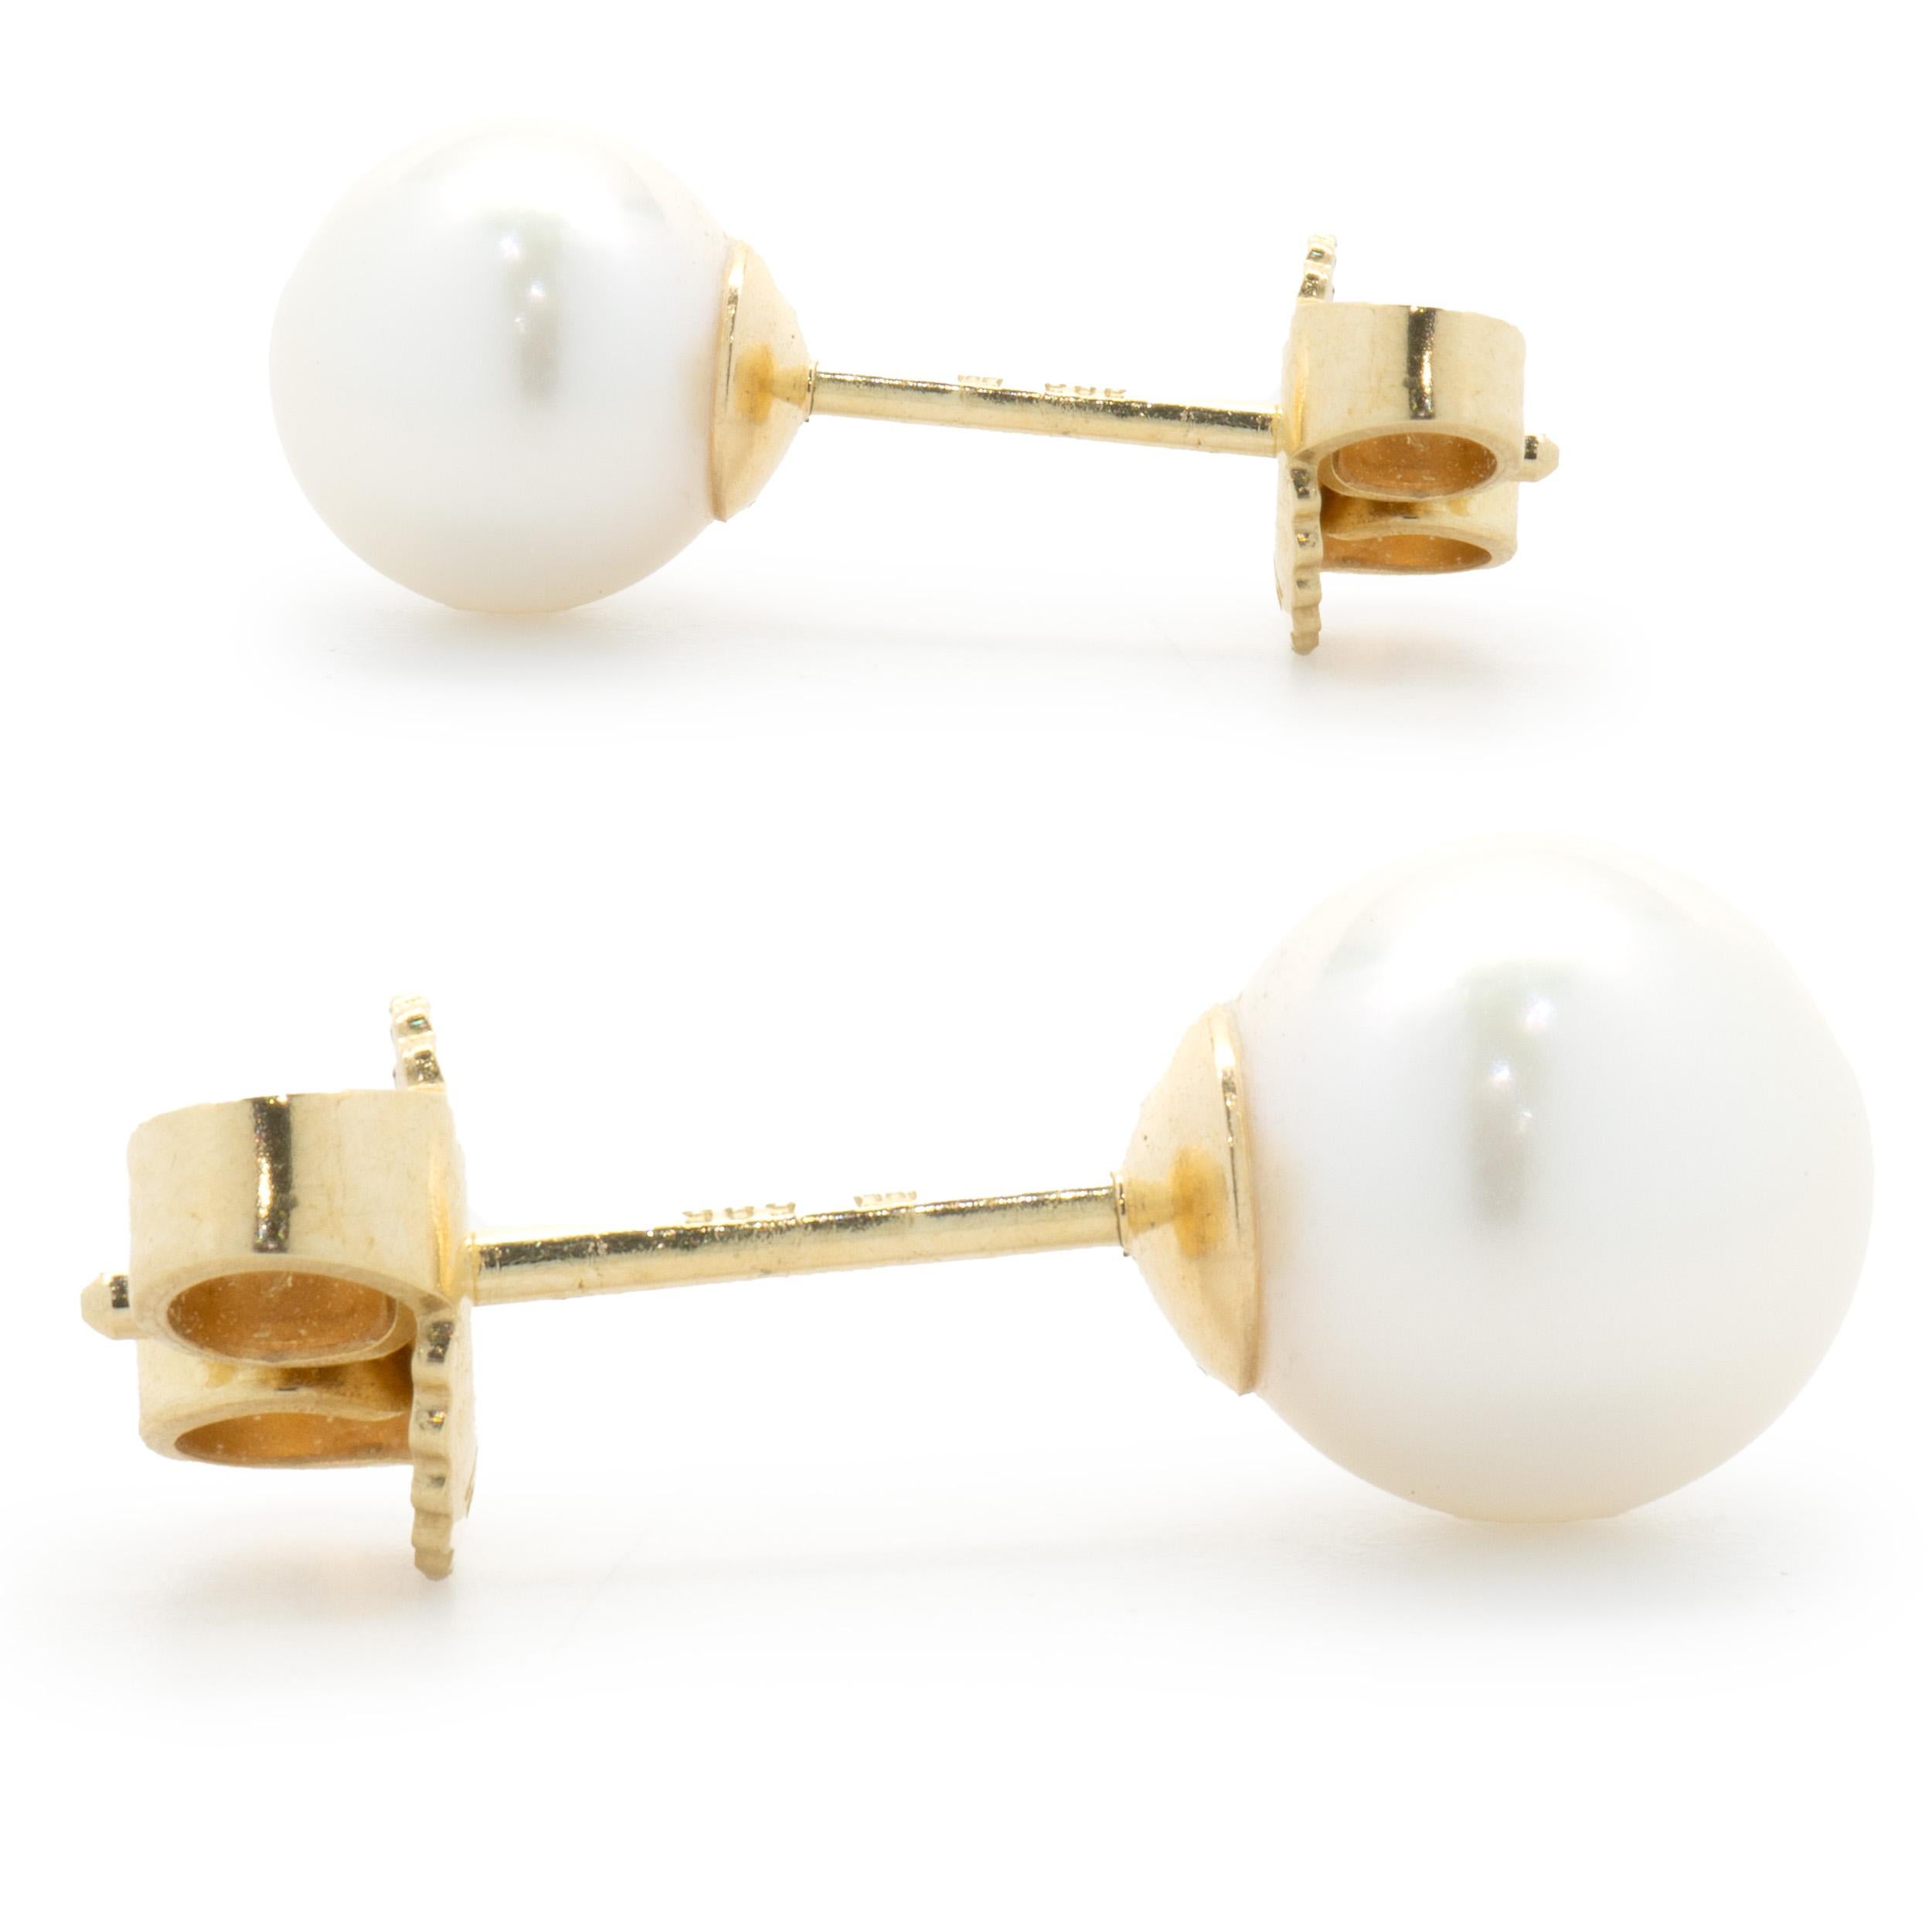 Designer: custom
Material: 14K yellow gold 
Weight: 1.65 grams
Dimensions: earrings measure 6.8mm 
